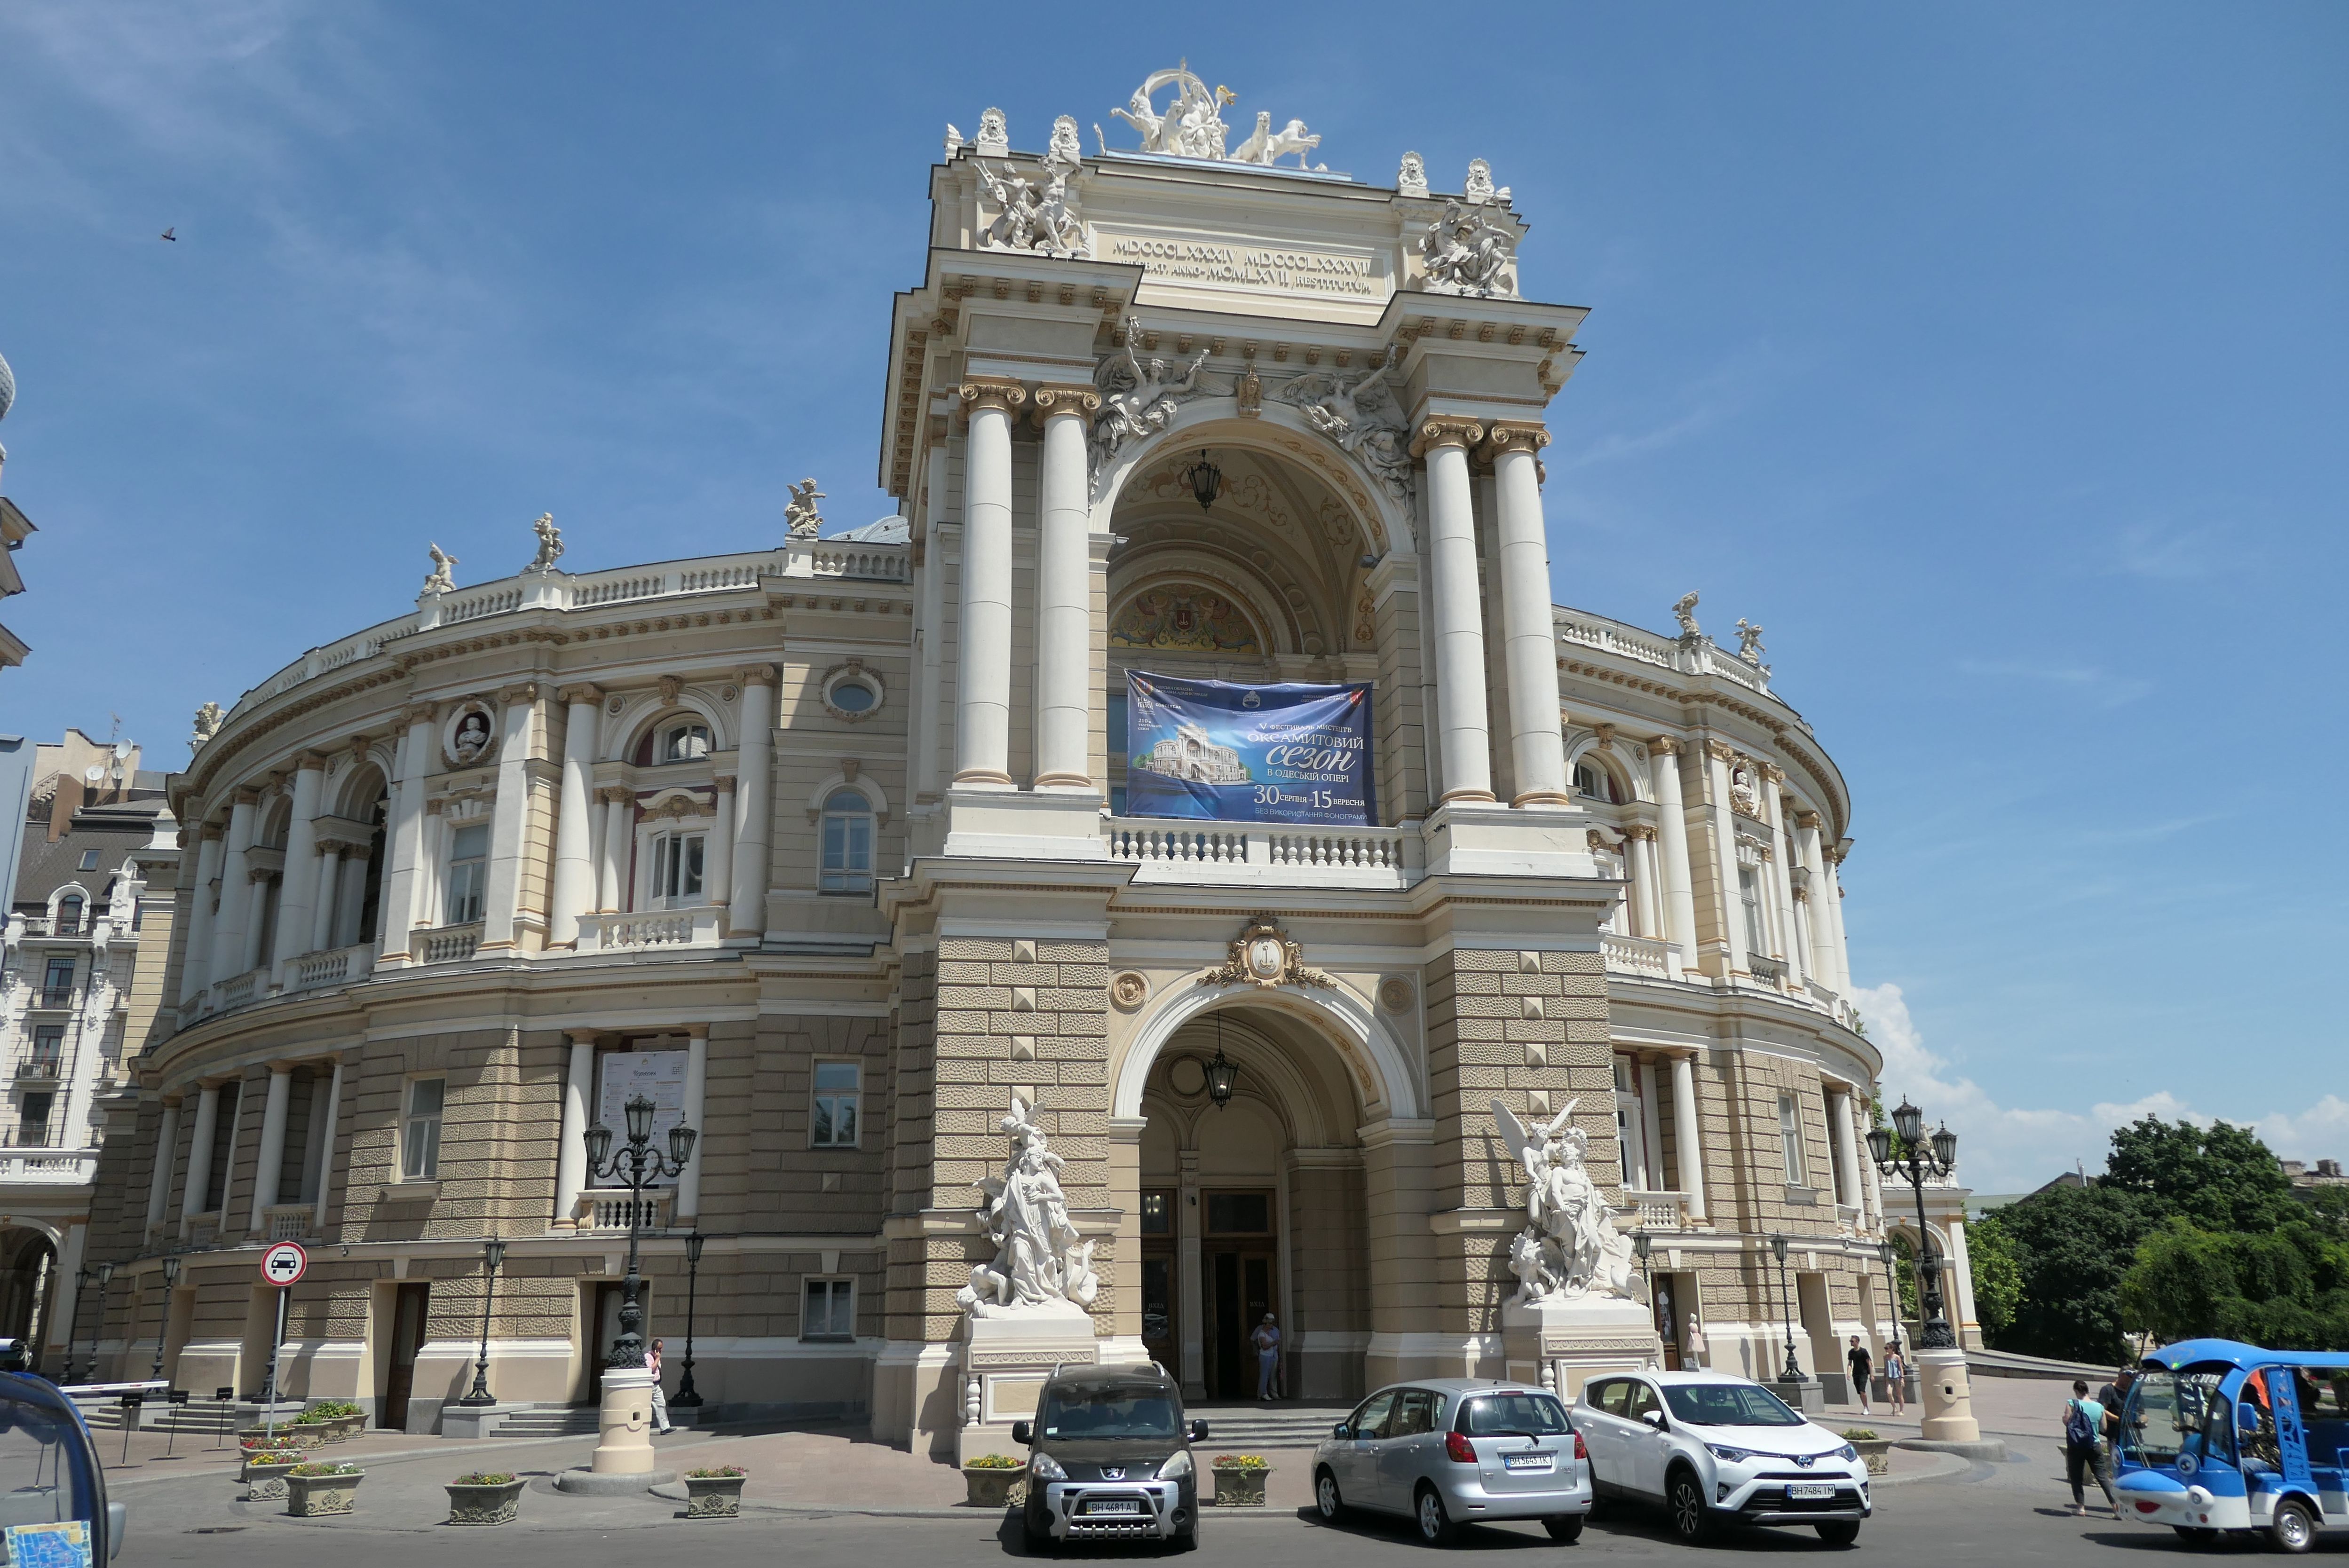 敖德萨国立歌舞剧院： 建于1809年的歌舞剧院。乌克兰的音乐人材，在从前的俄国和前苏联，历来占有一席